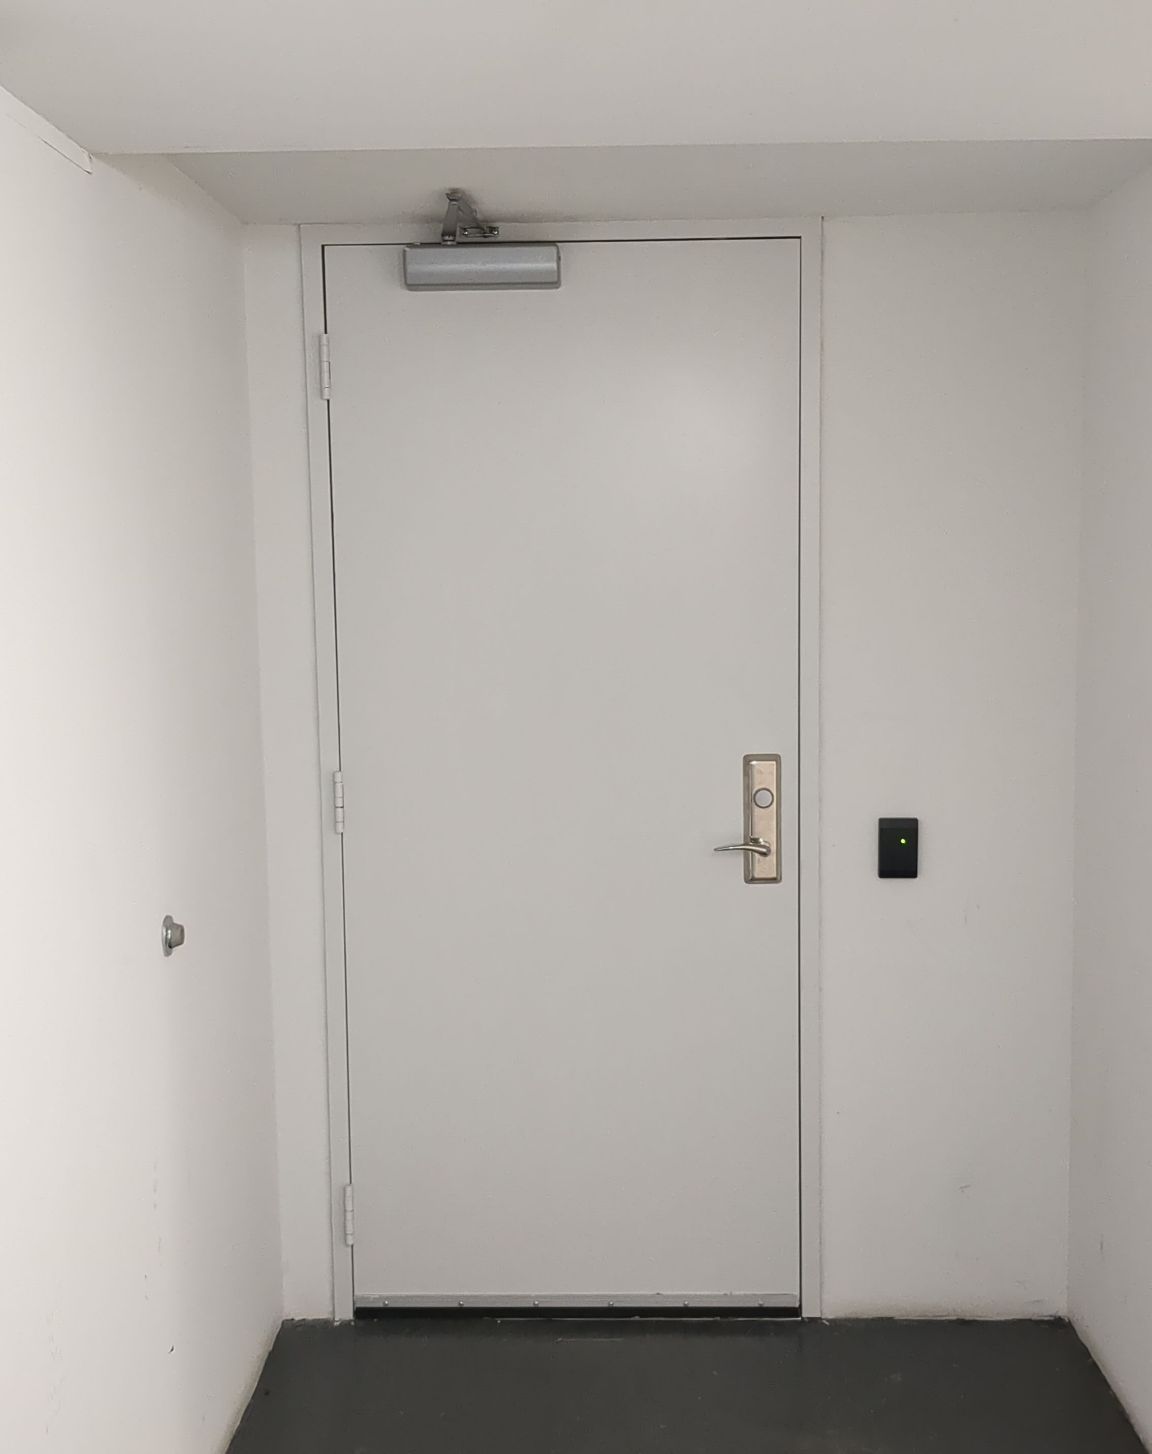 Clue 2 - Secret Door